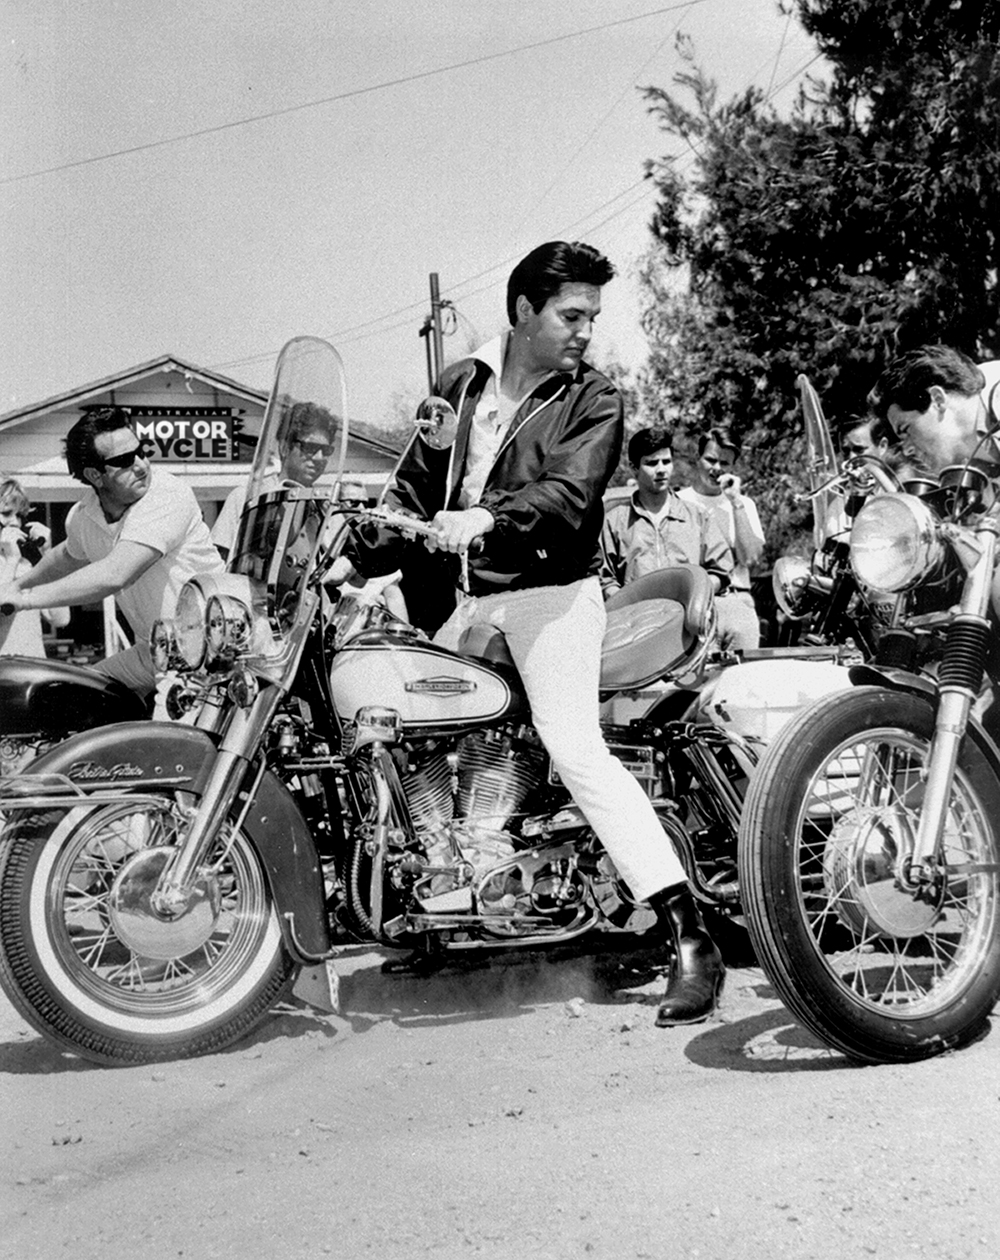 Elvis Presley motorcycles